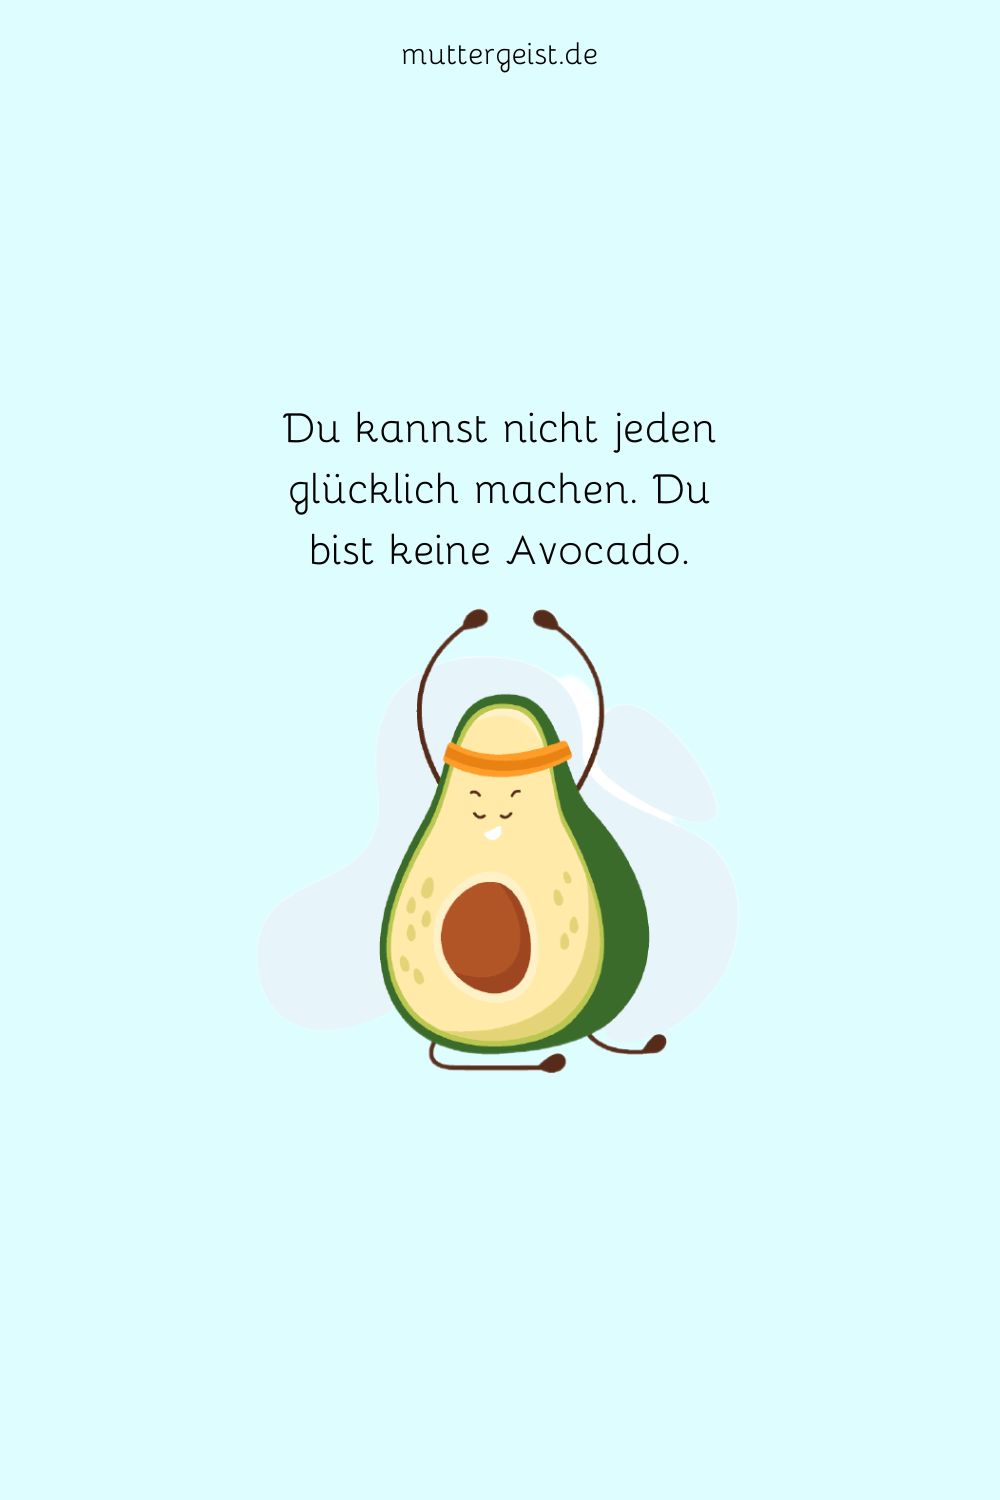 Du kannst nicht jeden glücklich machen. Du bist keine Avocado.